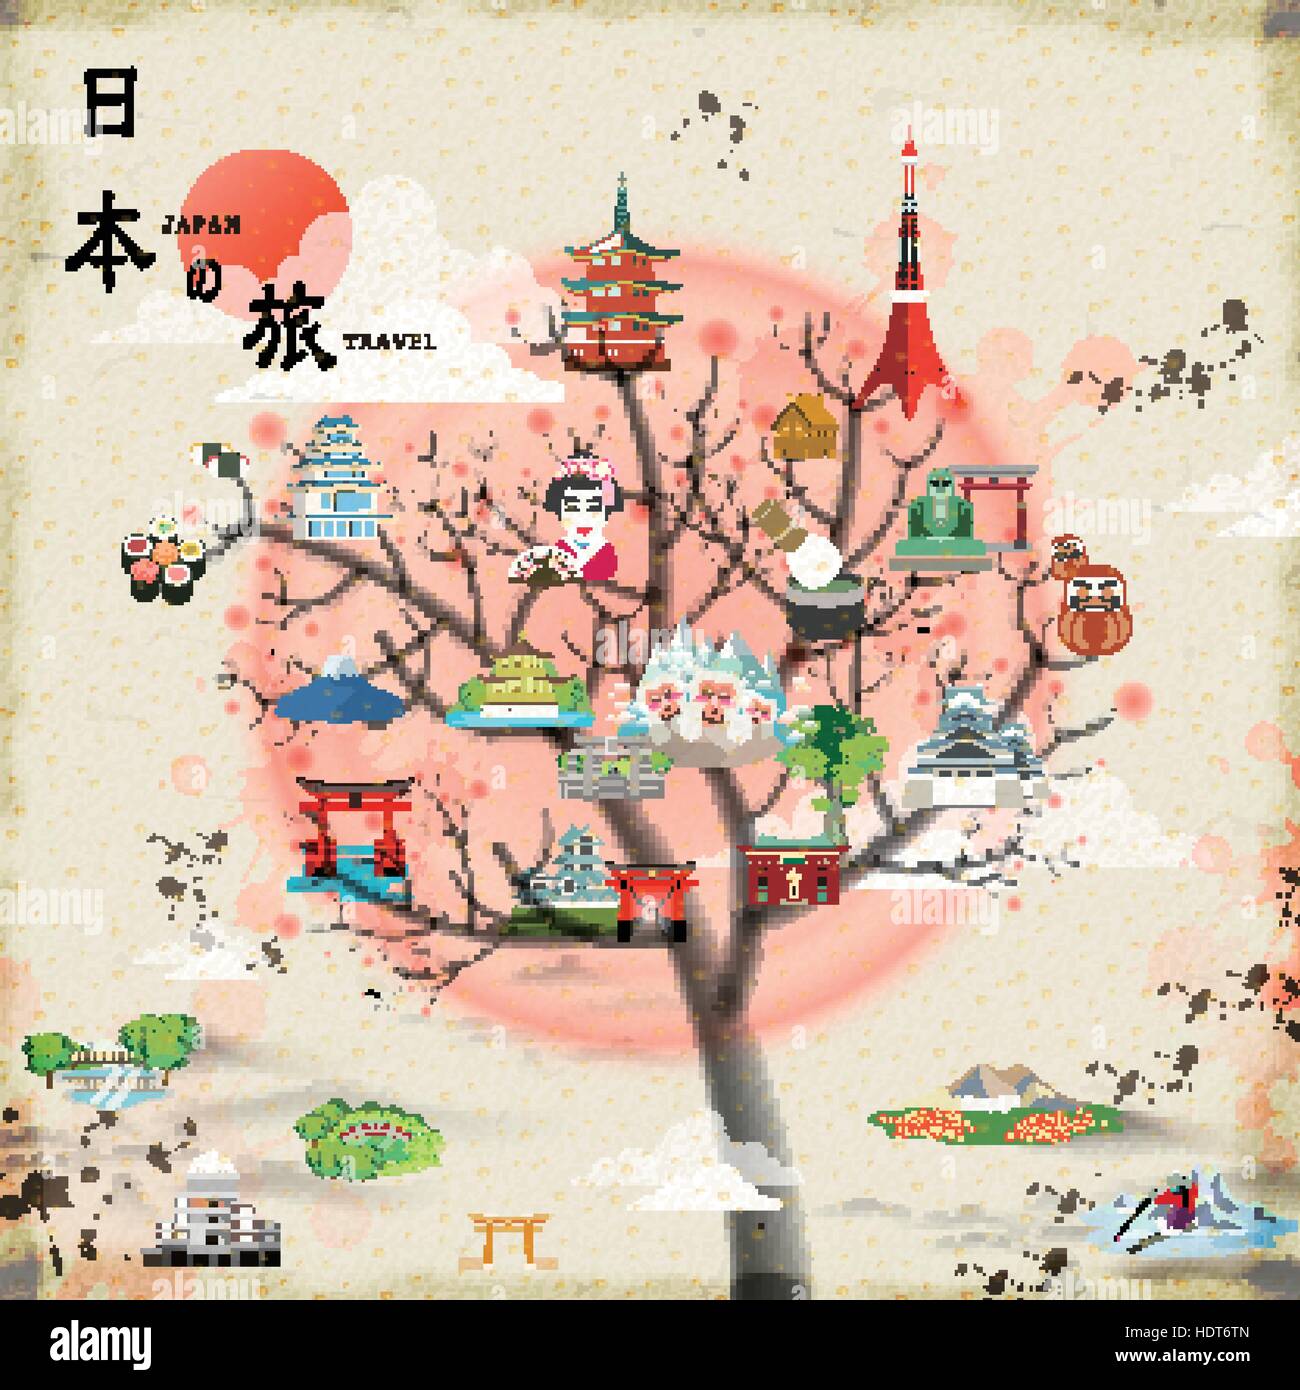 Attraente Japan travel poster design - Giappone viaggi in parole giapponesi sulla parte superiore sinistra Illustrazione Vettoriale